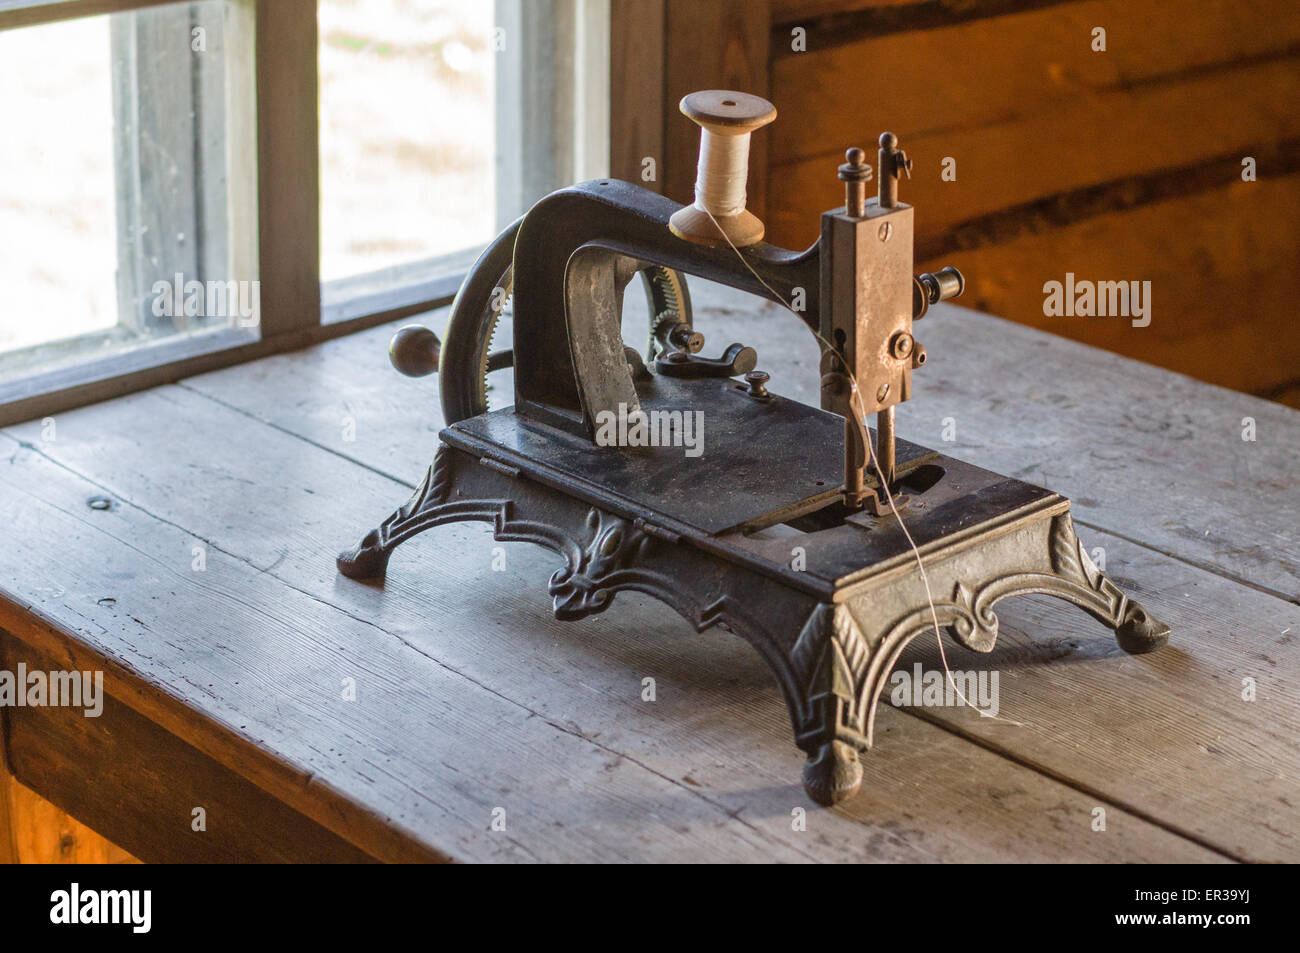 Old vintage sewing machine sur table en bois Banque D'Images